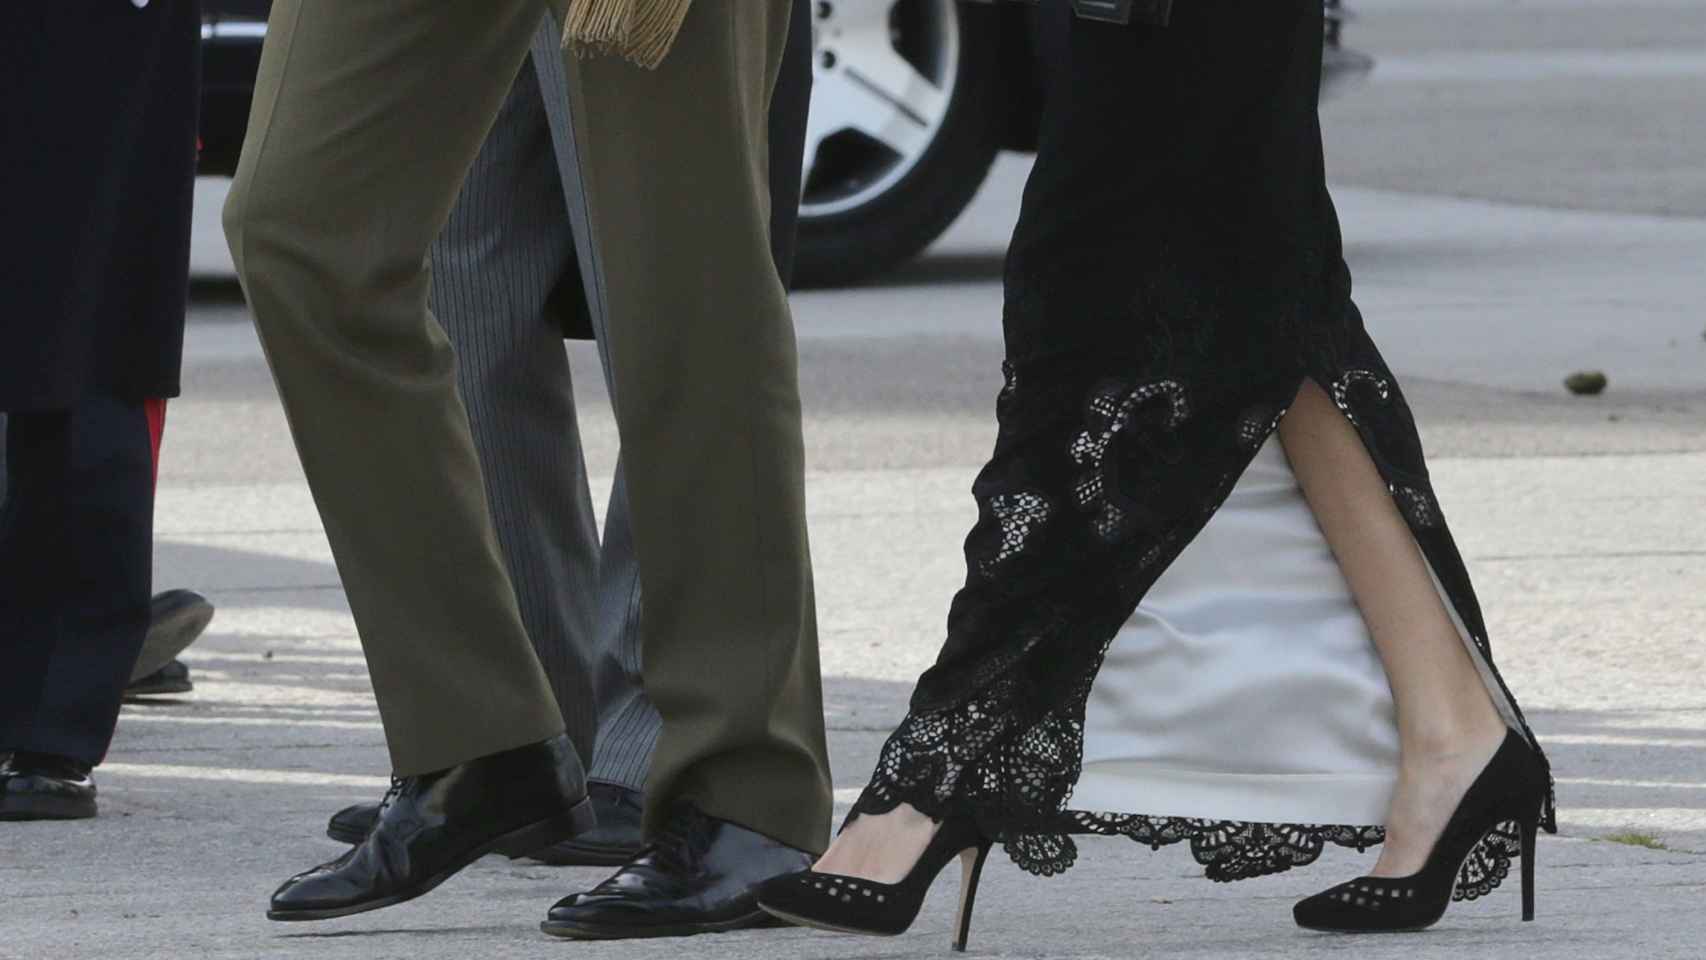 La Reina con falda larga en seda negra y bordado en hilo negro con sus tacones